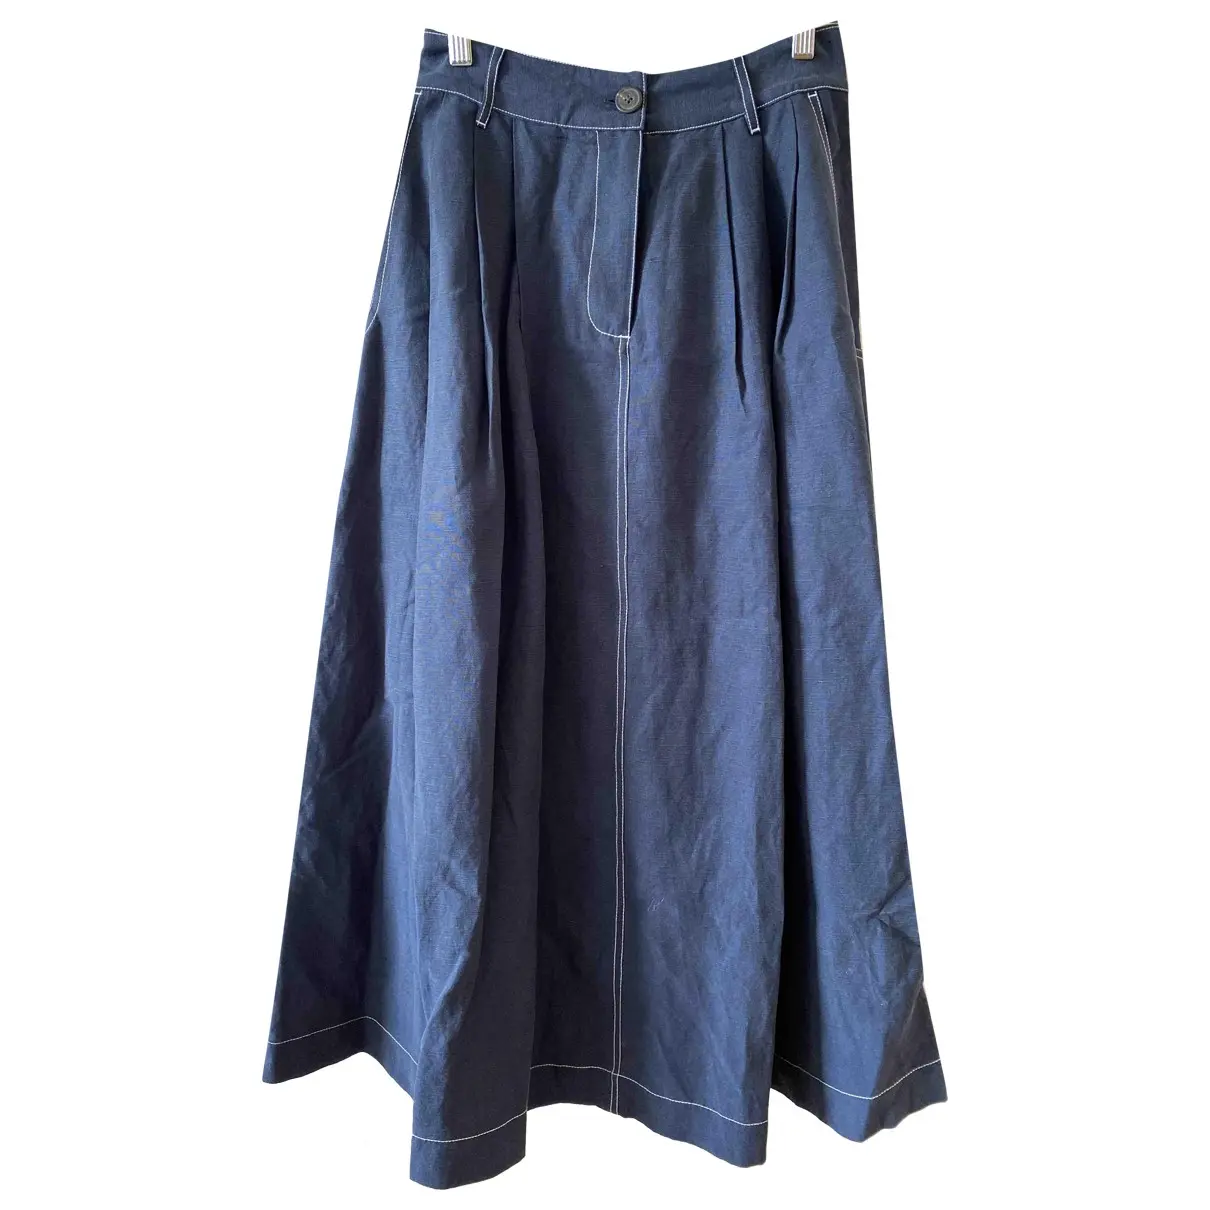 Linen mid-length skirt Mara Hoffman